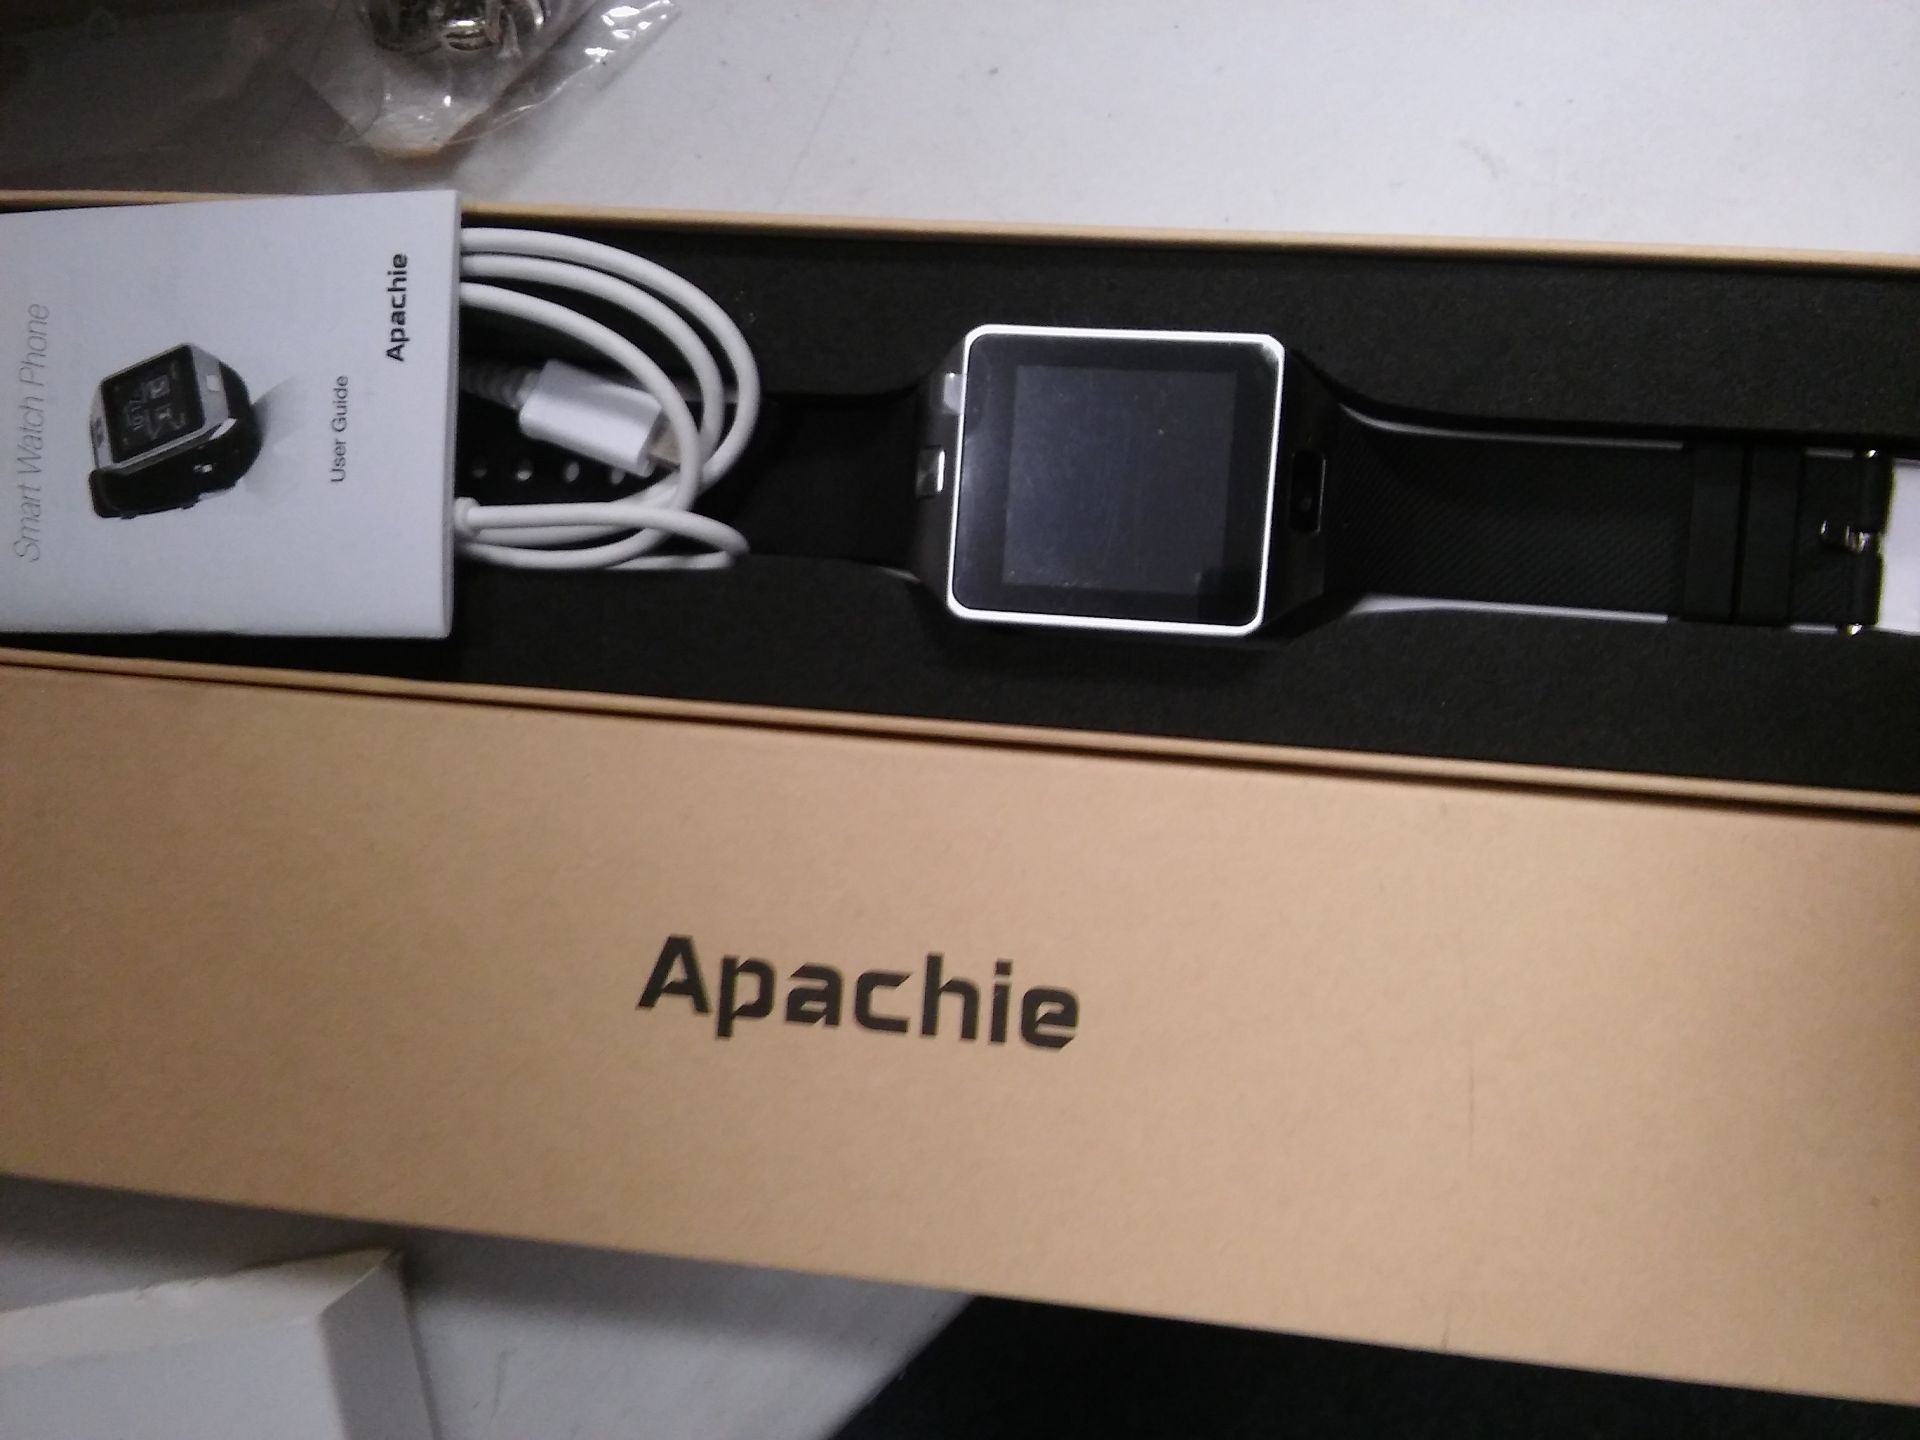 Apachie DZ09 smart watch.New.